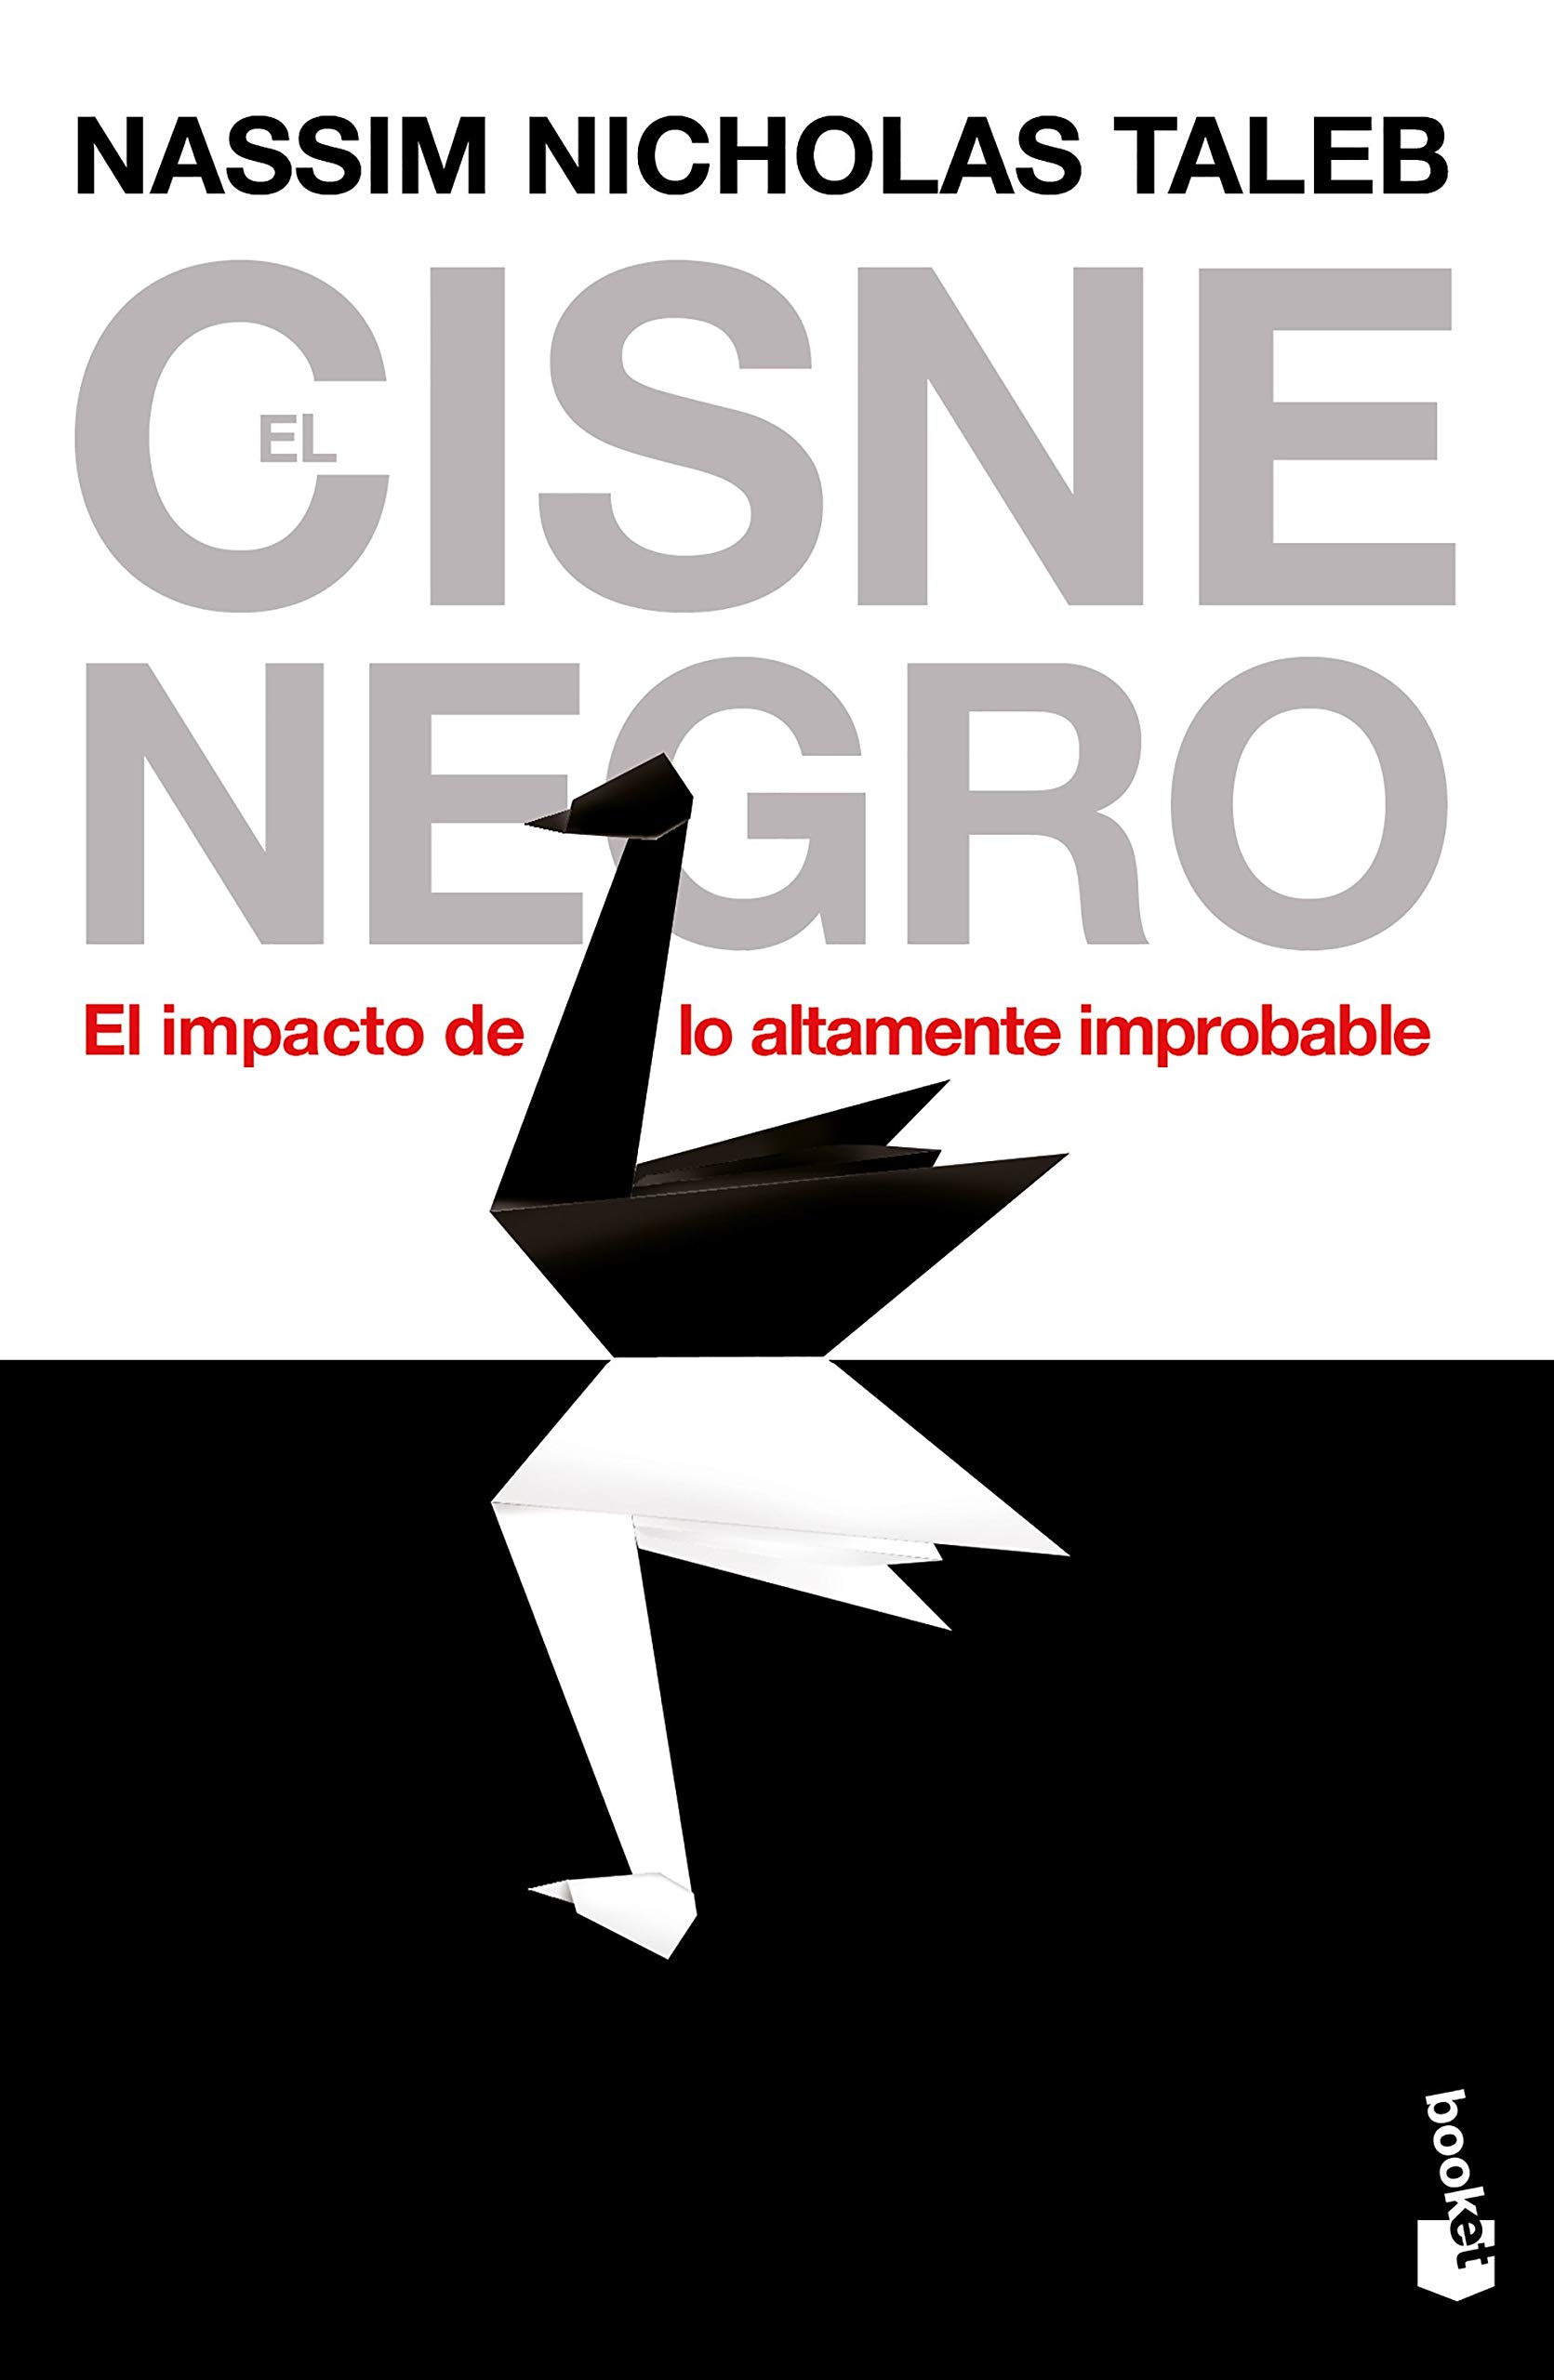 Libro Cisne Negro Nassim Nicholas Taleb Mentalidad sucesos improbables azar impacto mentalidad